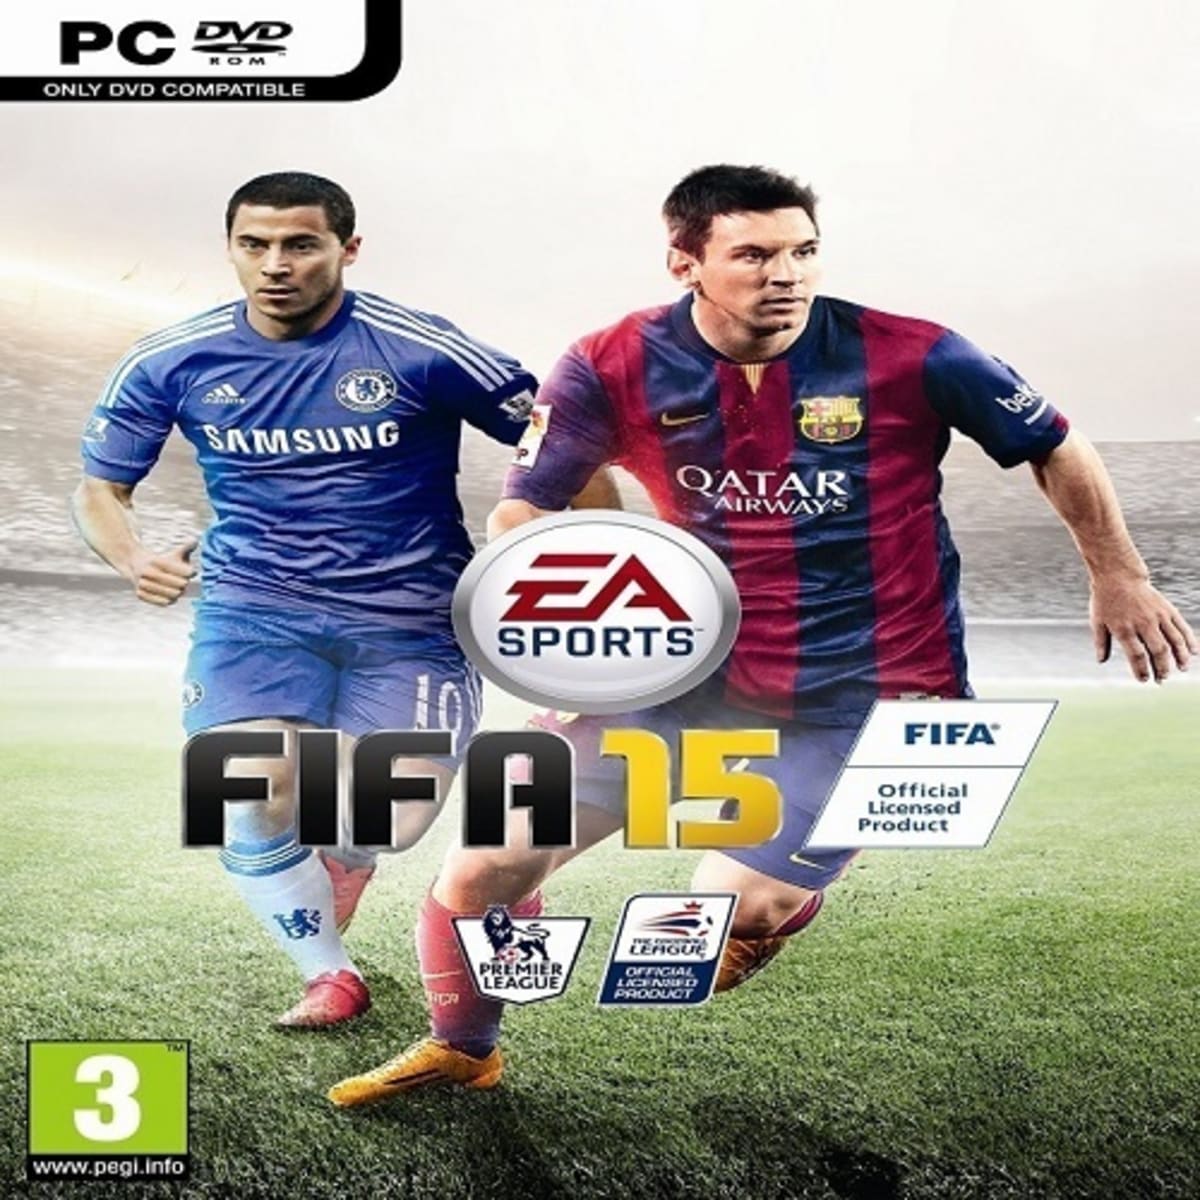 Game Fifa 15 - PC - GAMES E CONSOLES - GAME PC : PC Informática